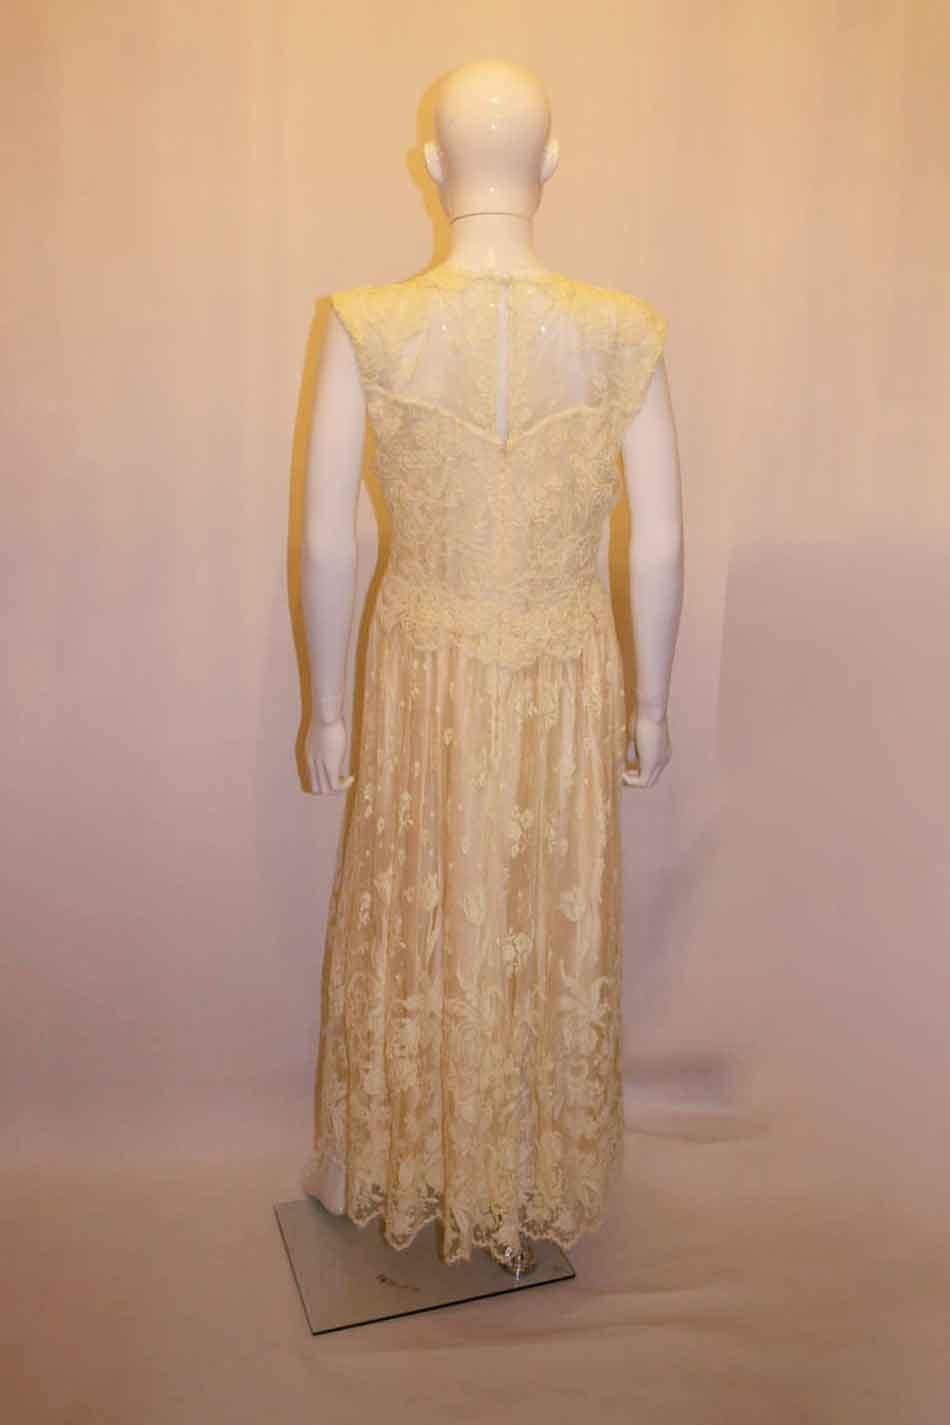 Ein hübsches Vintage-Spitzenkleid, ideal für eine Party oder eine Hochzeit. Das Kleid ist leicht zu tragen mit kontrastierendem Ober- und  Rockbereiche. Das Kleid ist vollständig gefüttert. Oberweite bis zu 37'', Länge 58''